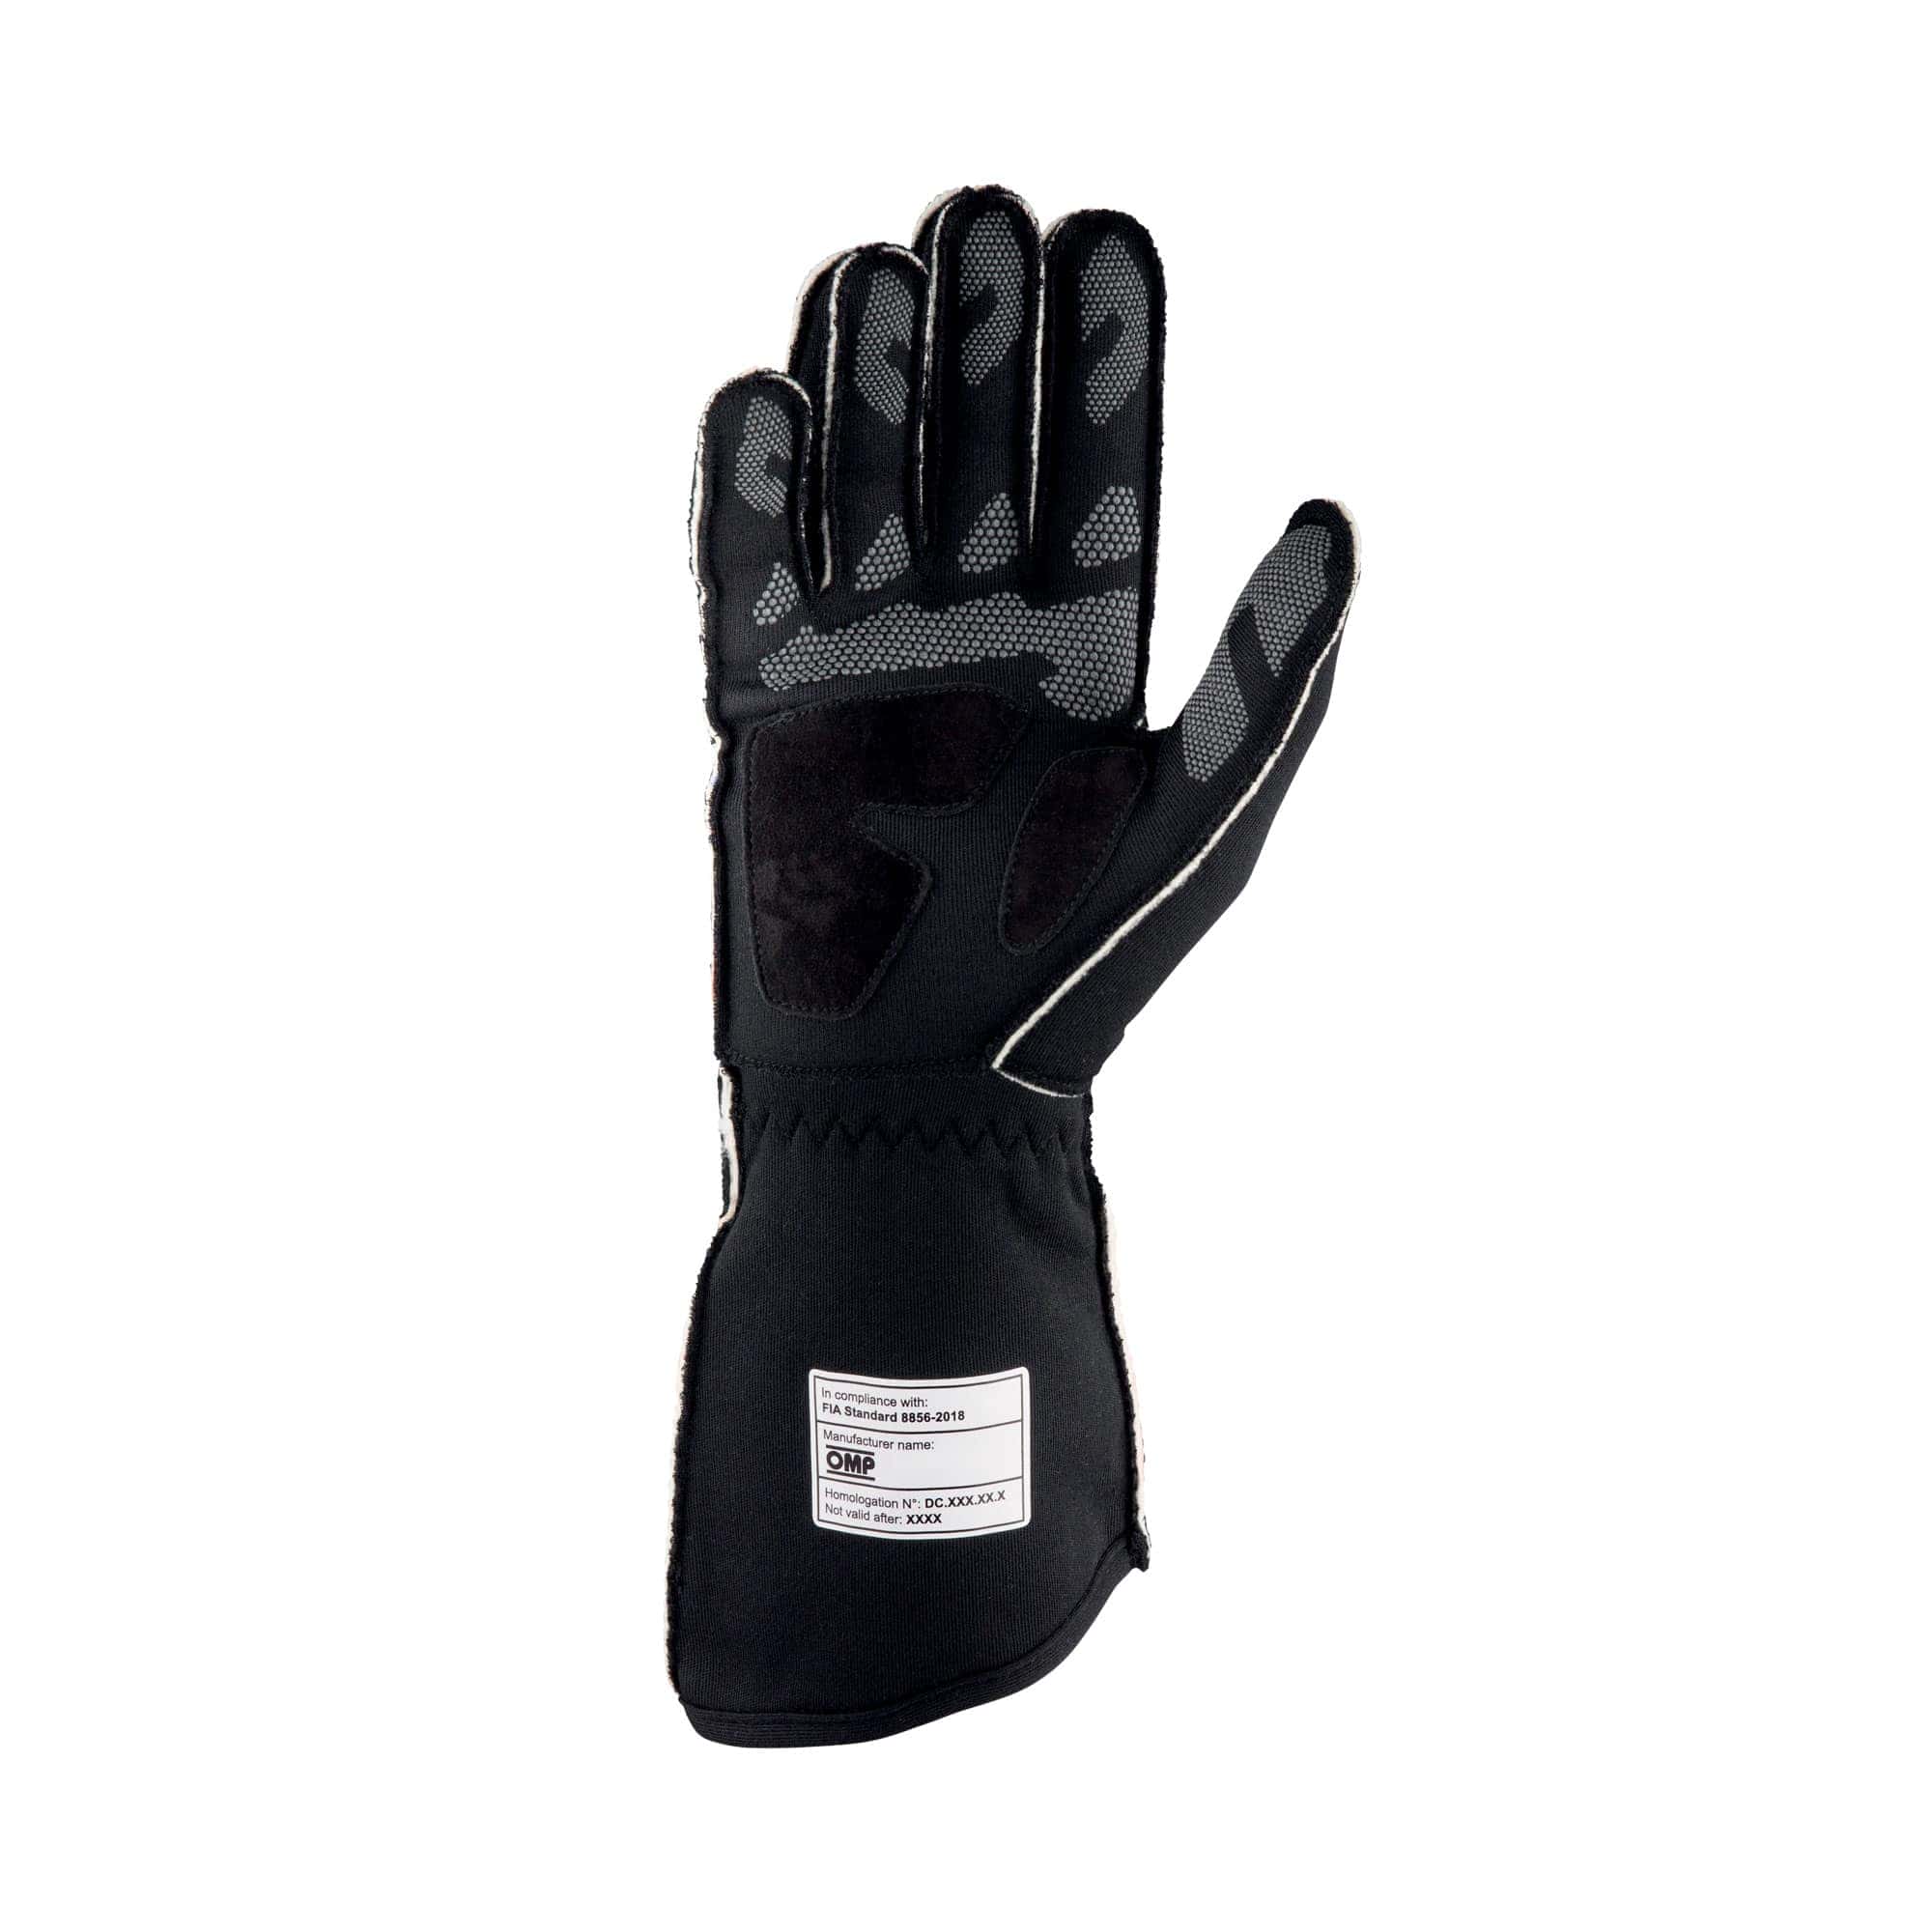 Guanti-Tecnica-Gloves-Omp-Nero-Rosso-IB-772-NR-rear